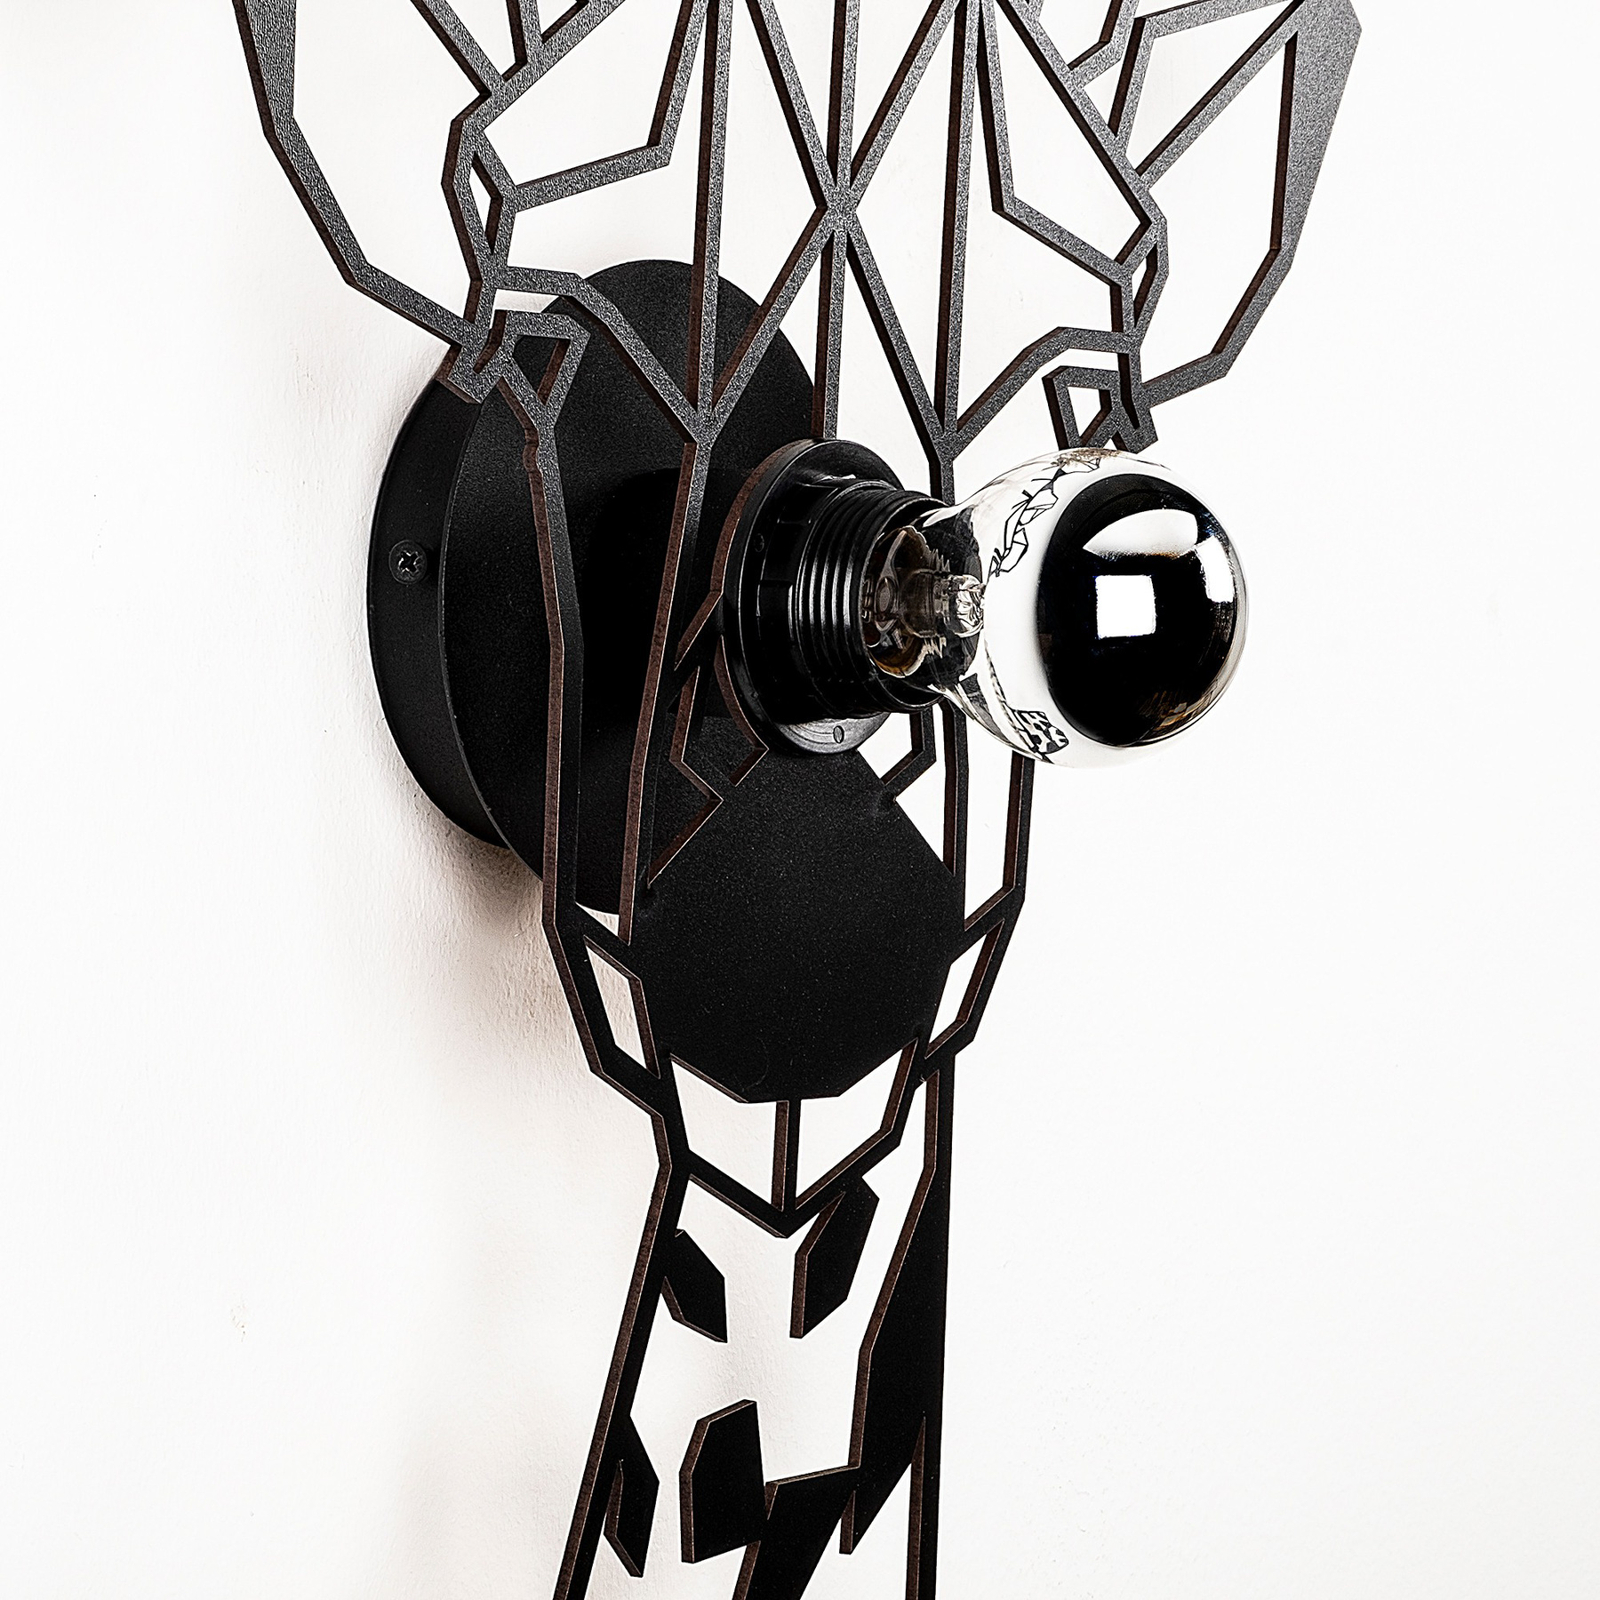 Wandlampe W-029, Lasercut, Giraffendesign, schwarz